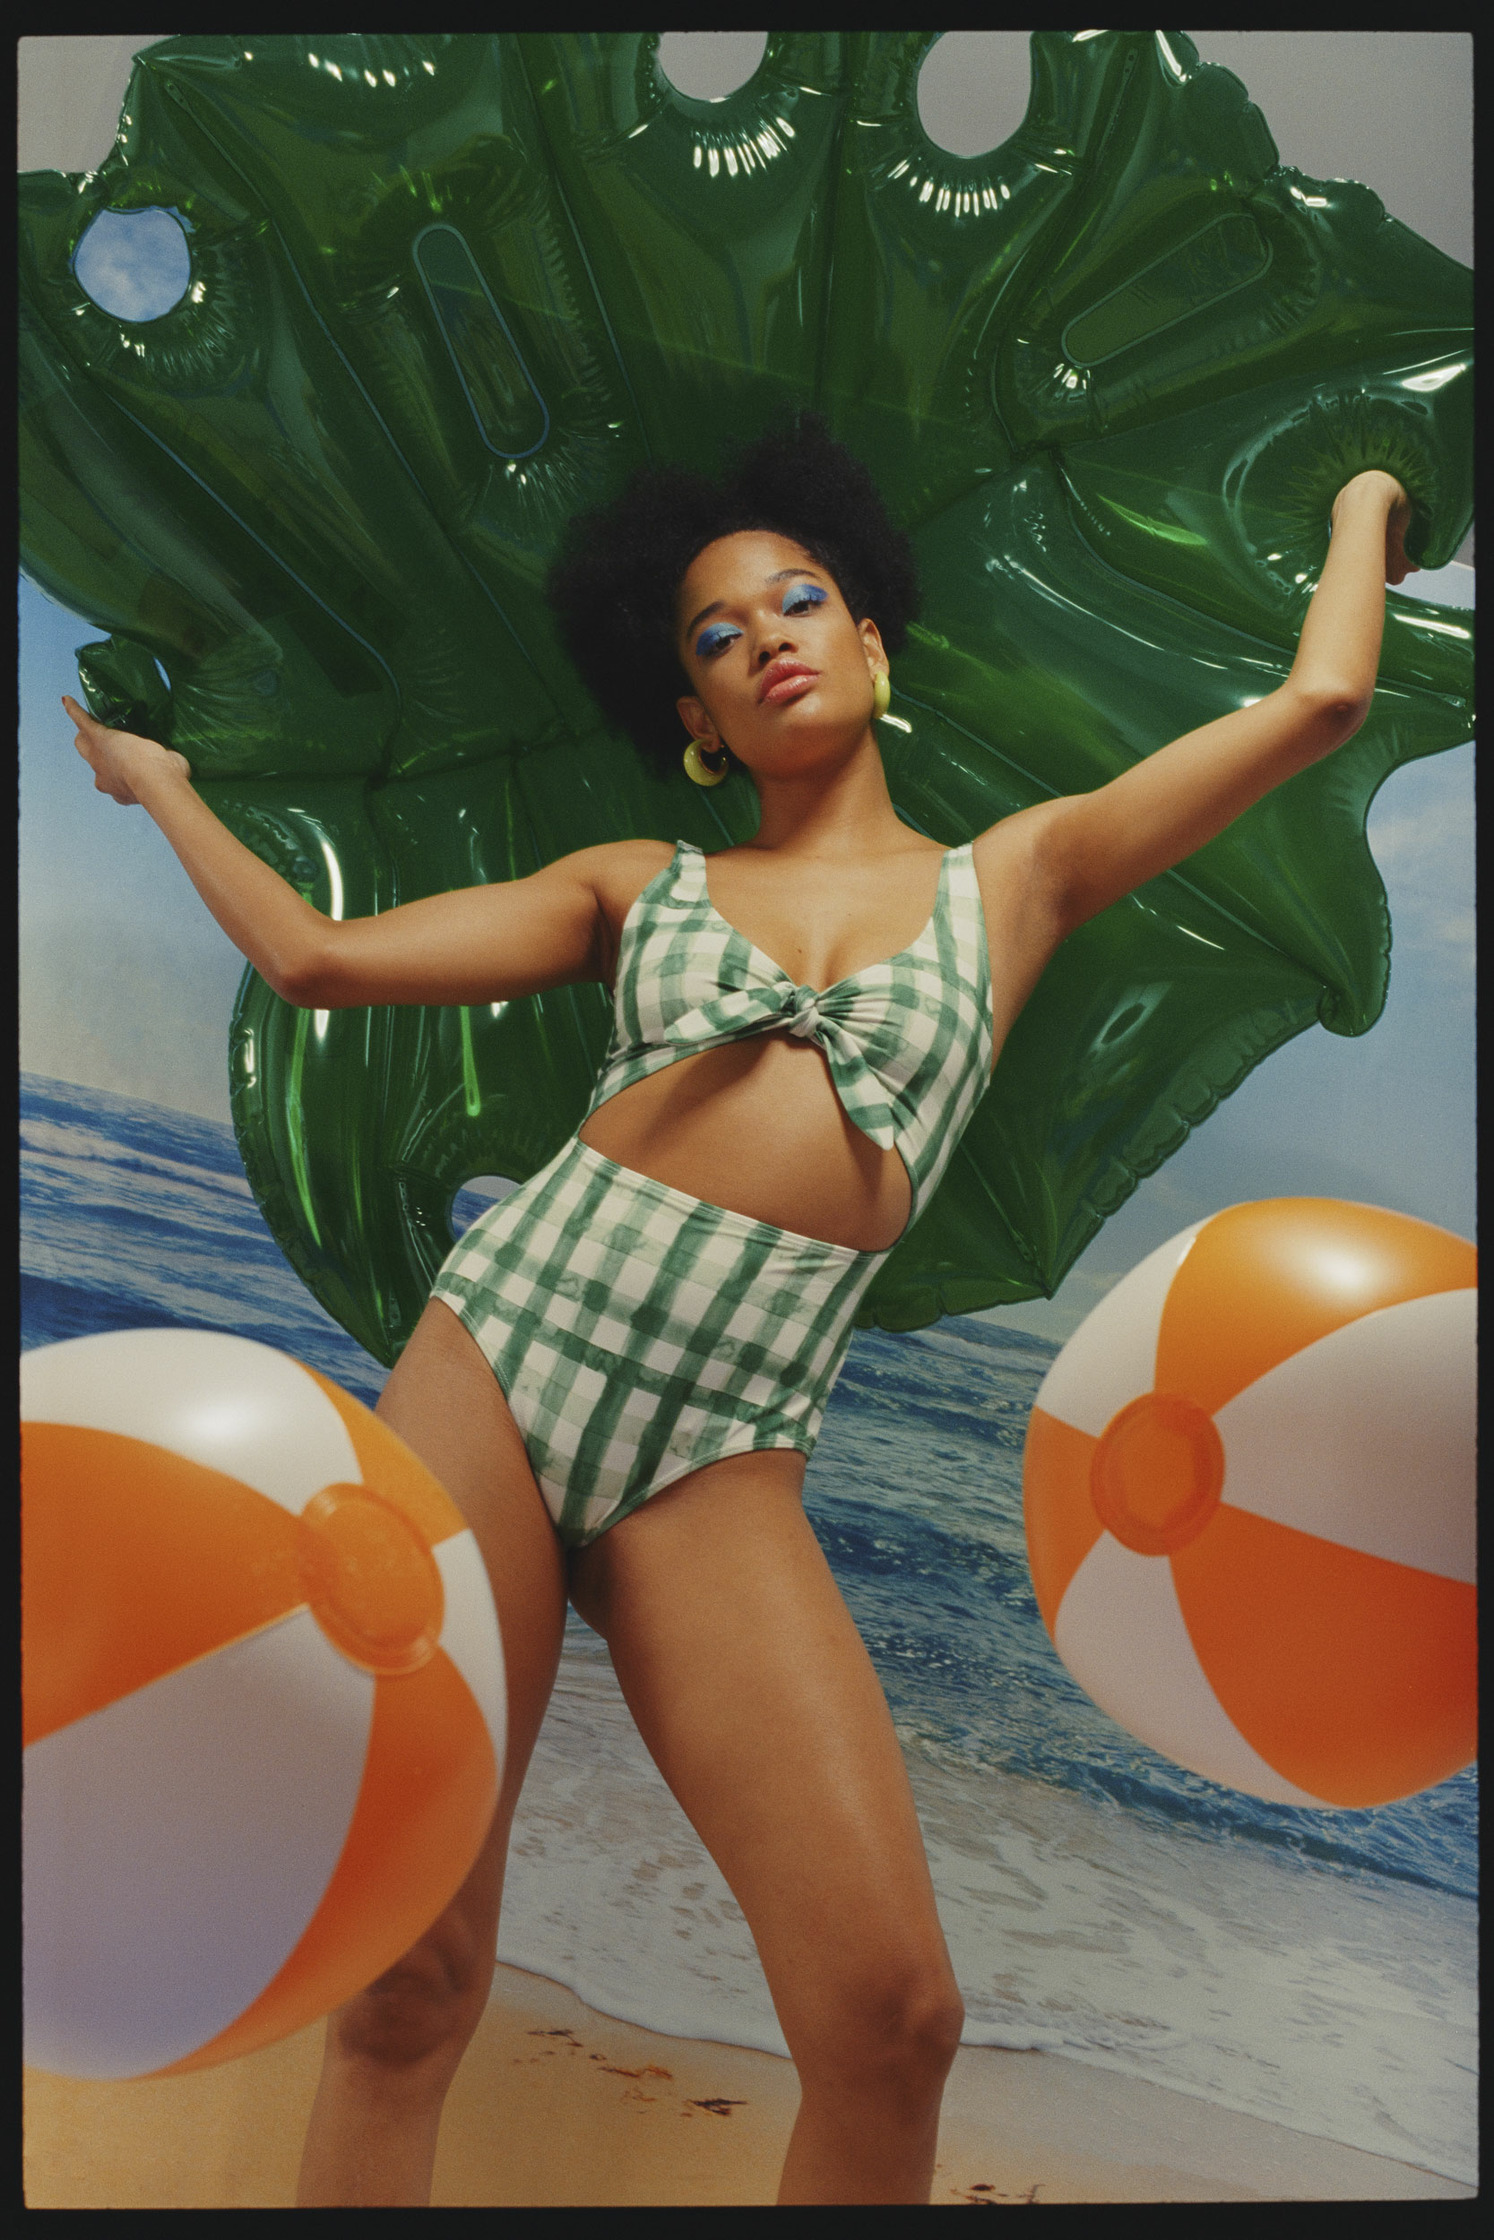 a woman in a green bikini posing with balloons